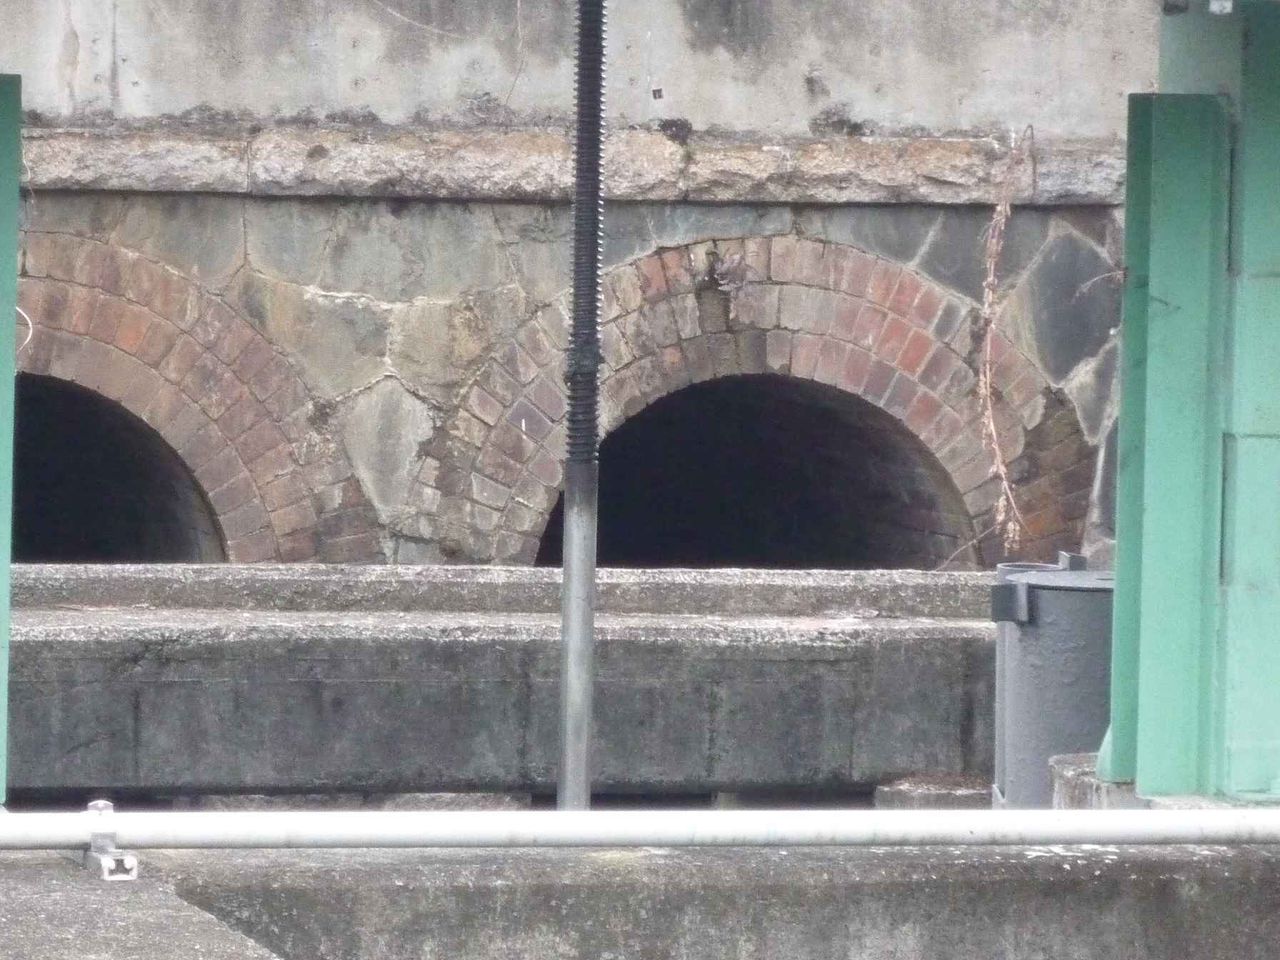 Jrのレンガトンネルは水路用もあるみたい アジャリの森近くの水路用レンガトンネル 高槻network新聞